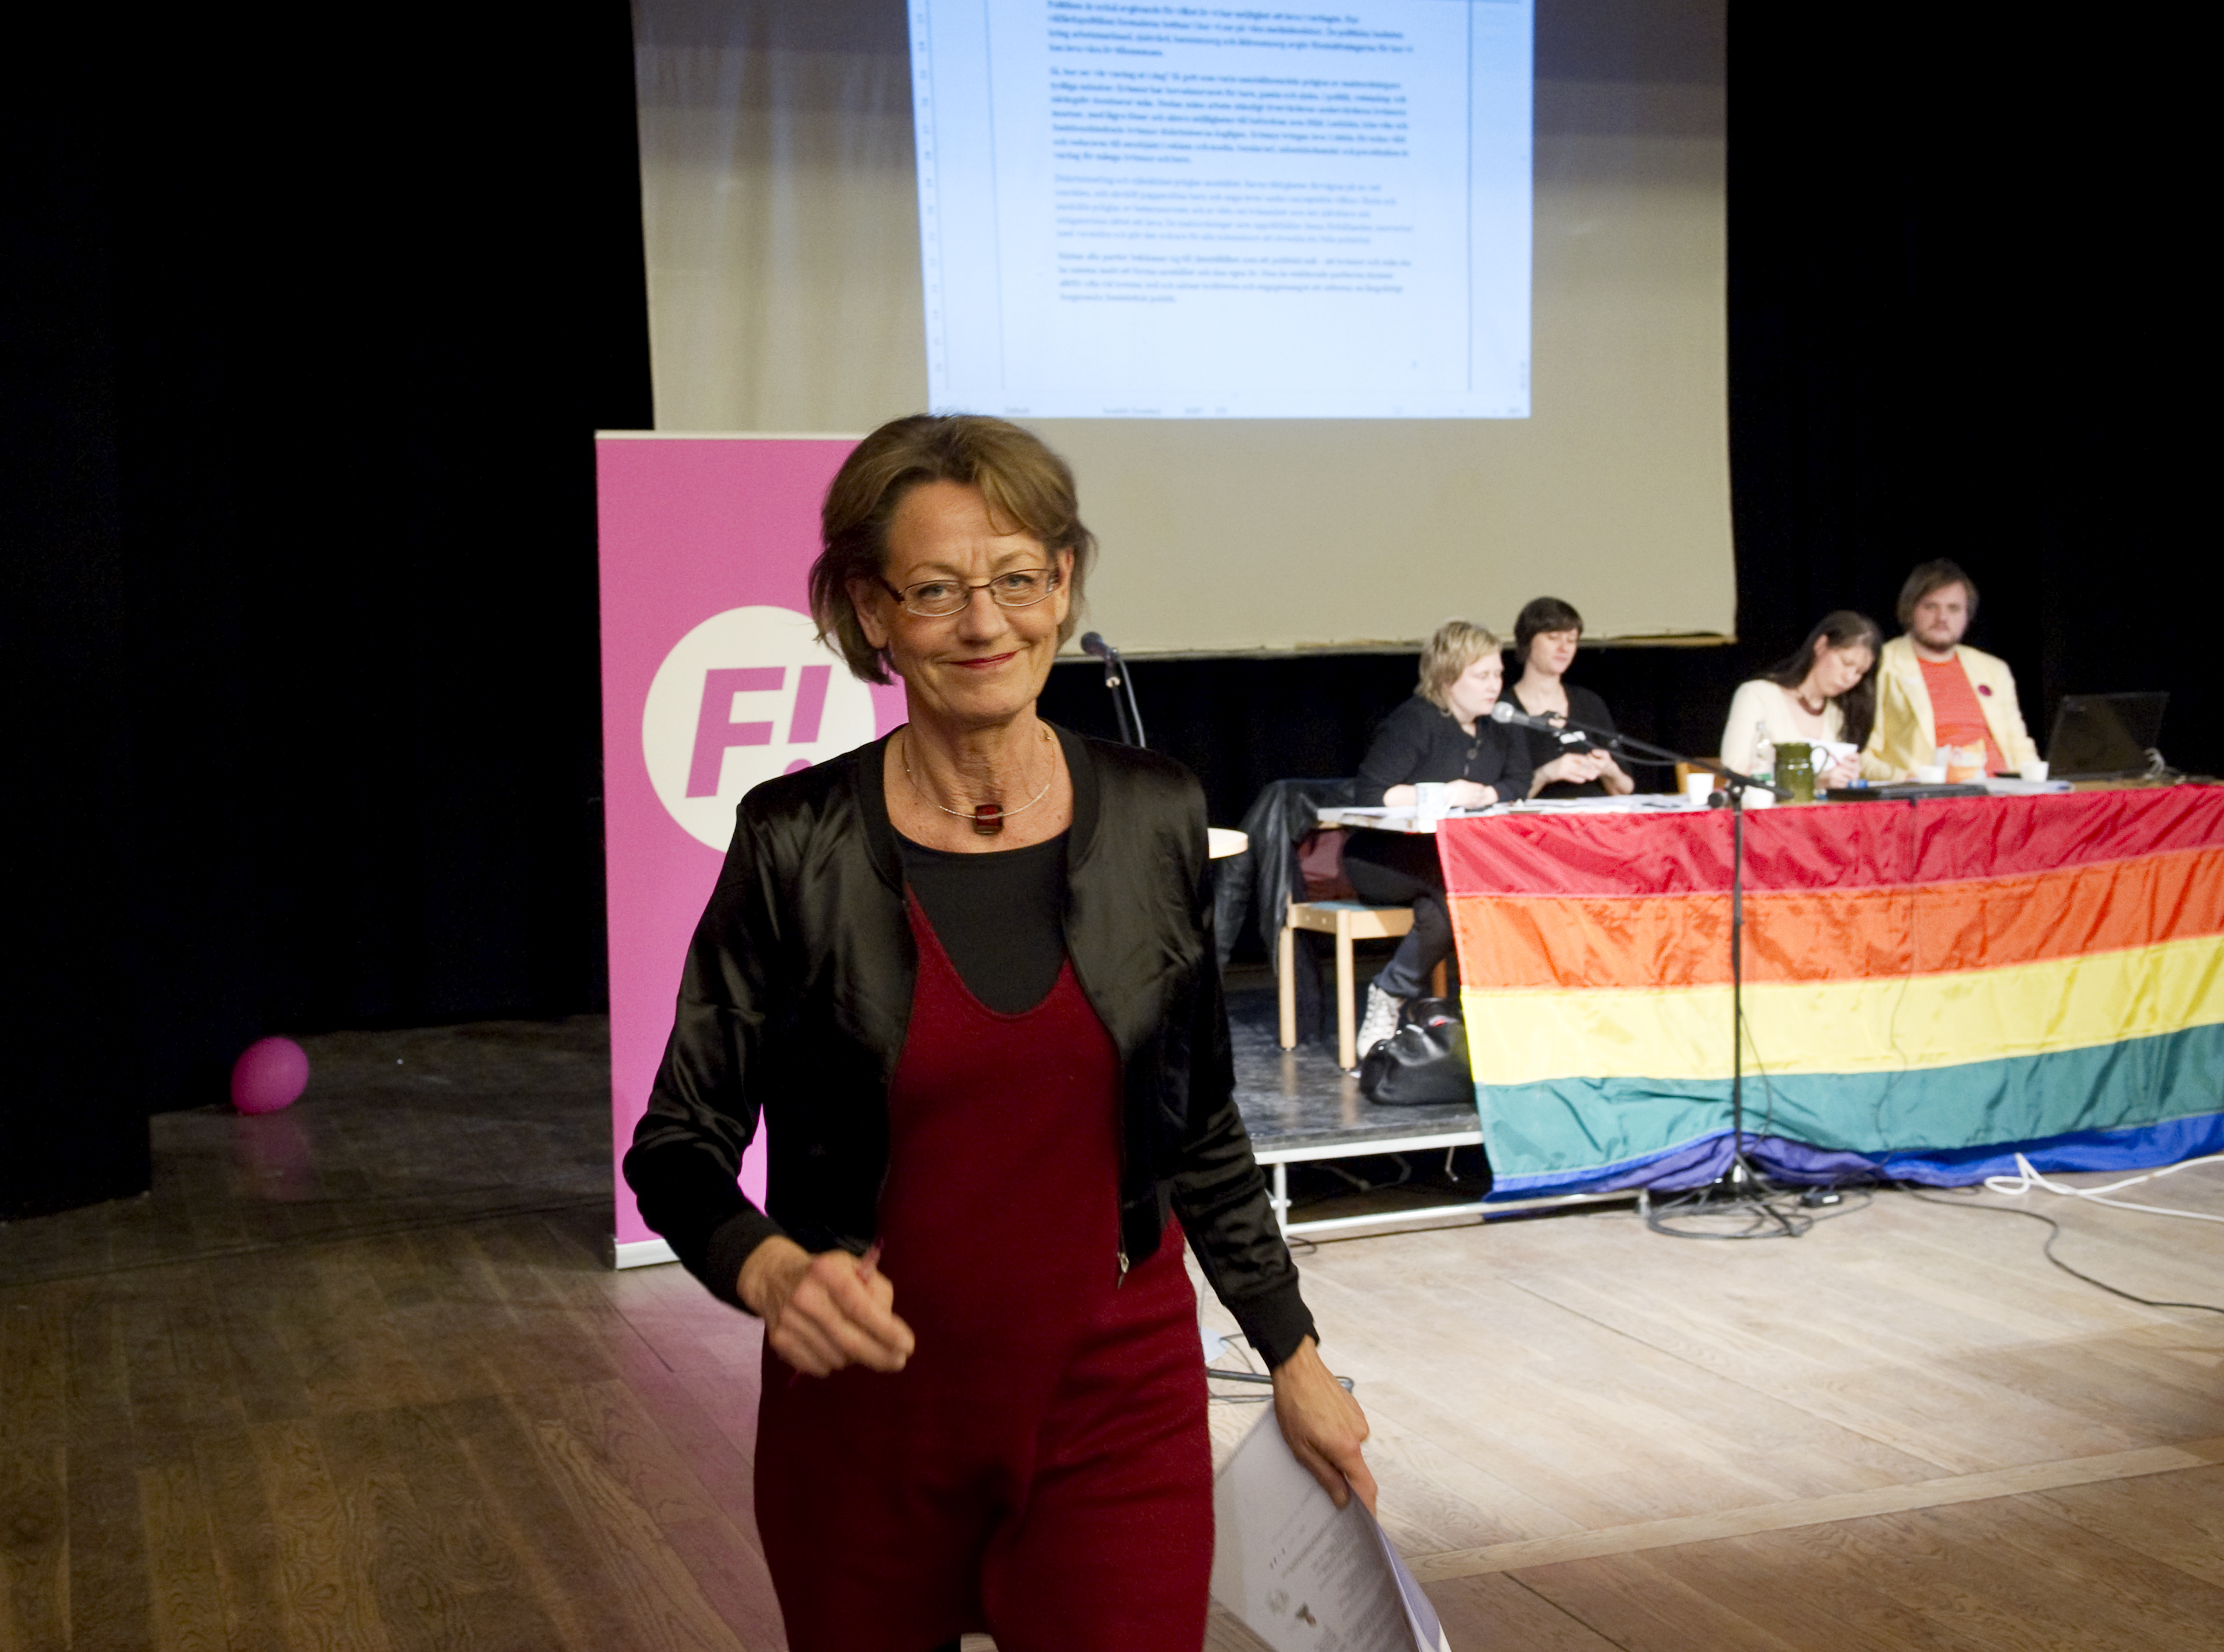 Riksdagsvalet 2010, Gudrun Schyman, Feministiskt initiativ, Arbetsmarknad, Lönediskriminering